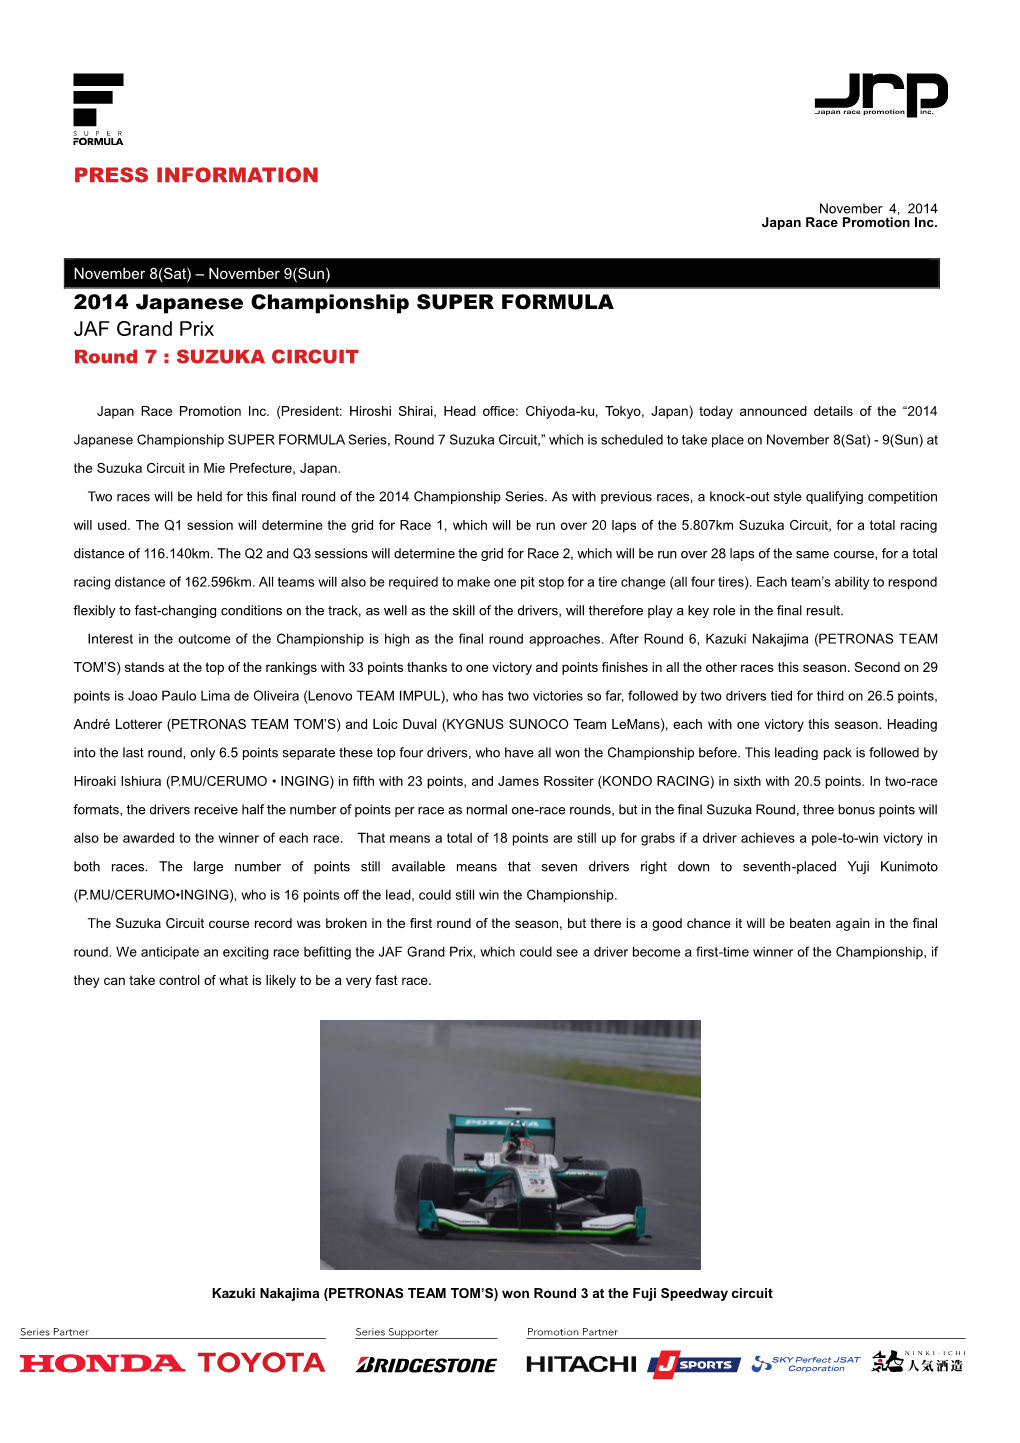 PRESS INFORMATION 2014 Japanese Championship SUPER FORMULA JAF Grand Prix